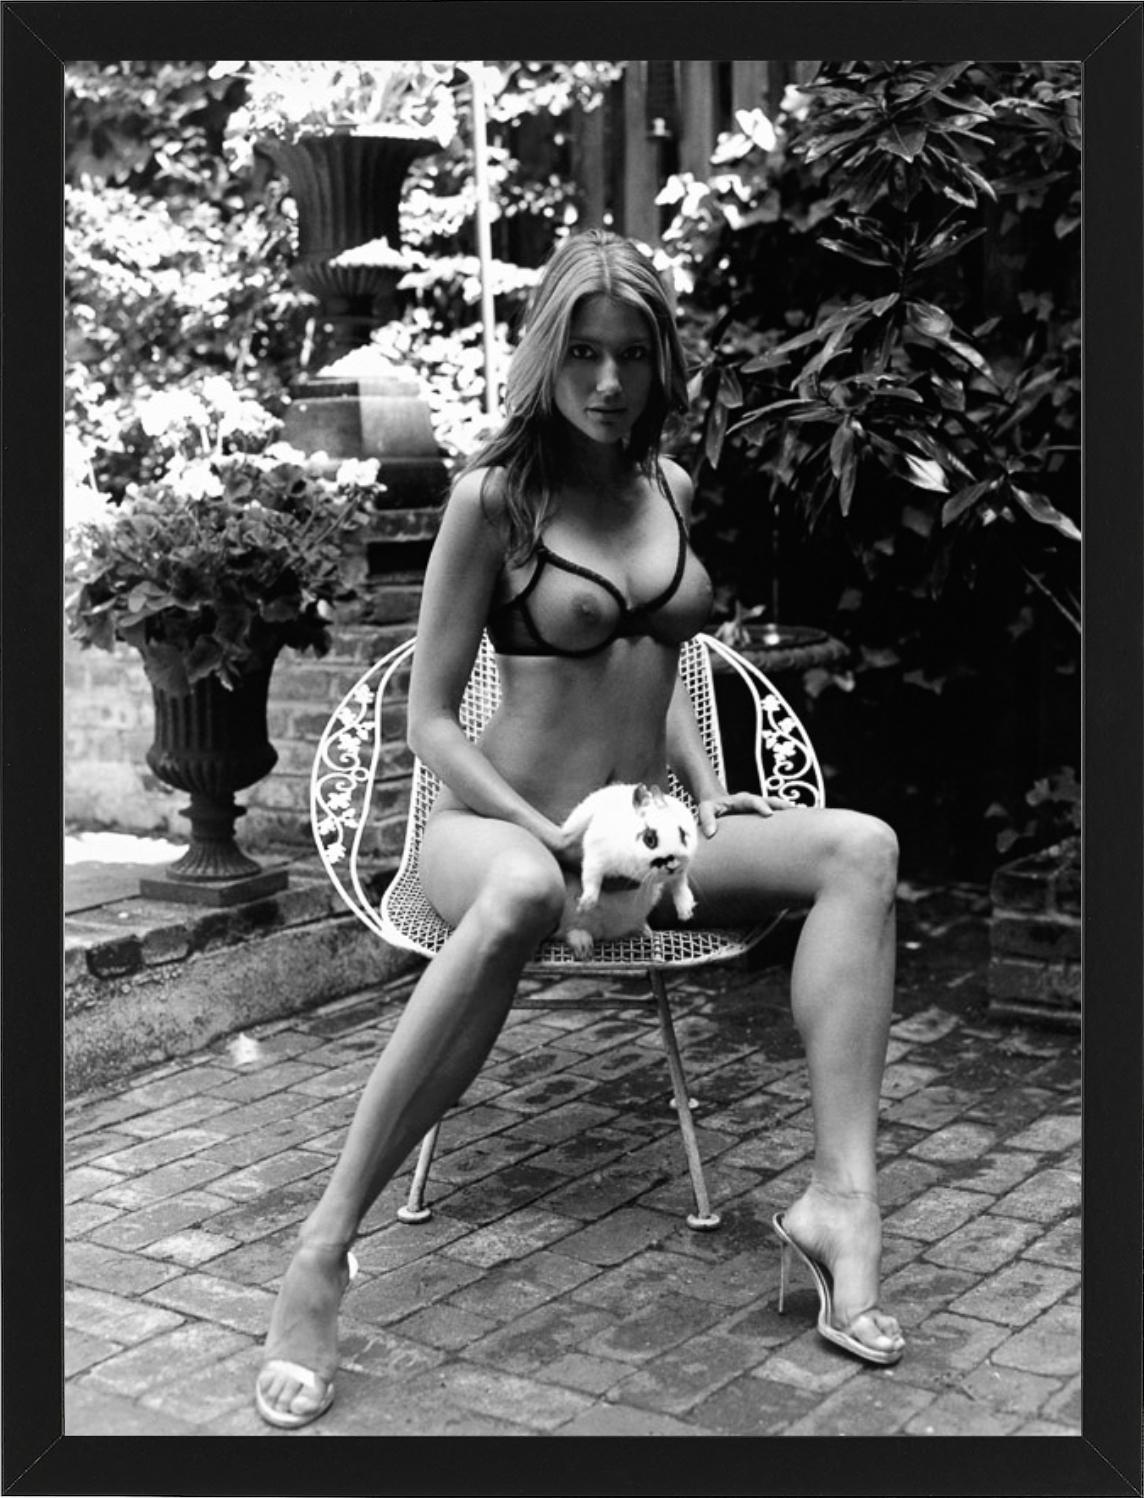 Brenda Schad, NYC – Nacktes Modell im Garten mit Bunny, Kunstfotografie, 2004 (Zeitgenössisch), Photograph, von Sante D´ Orazio